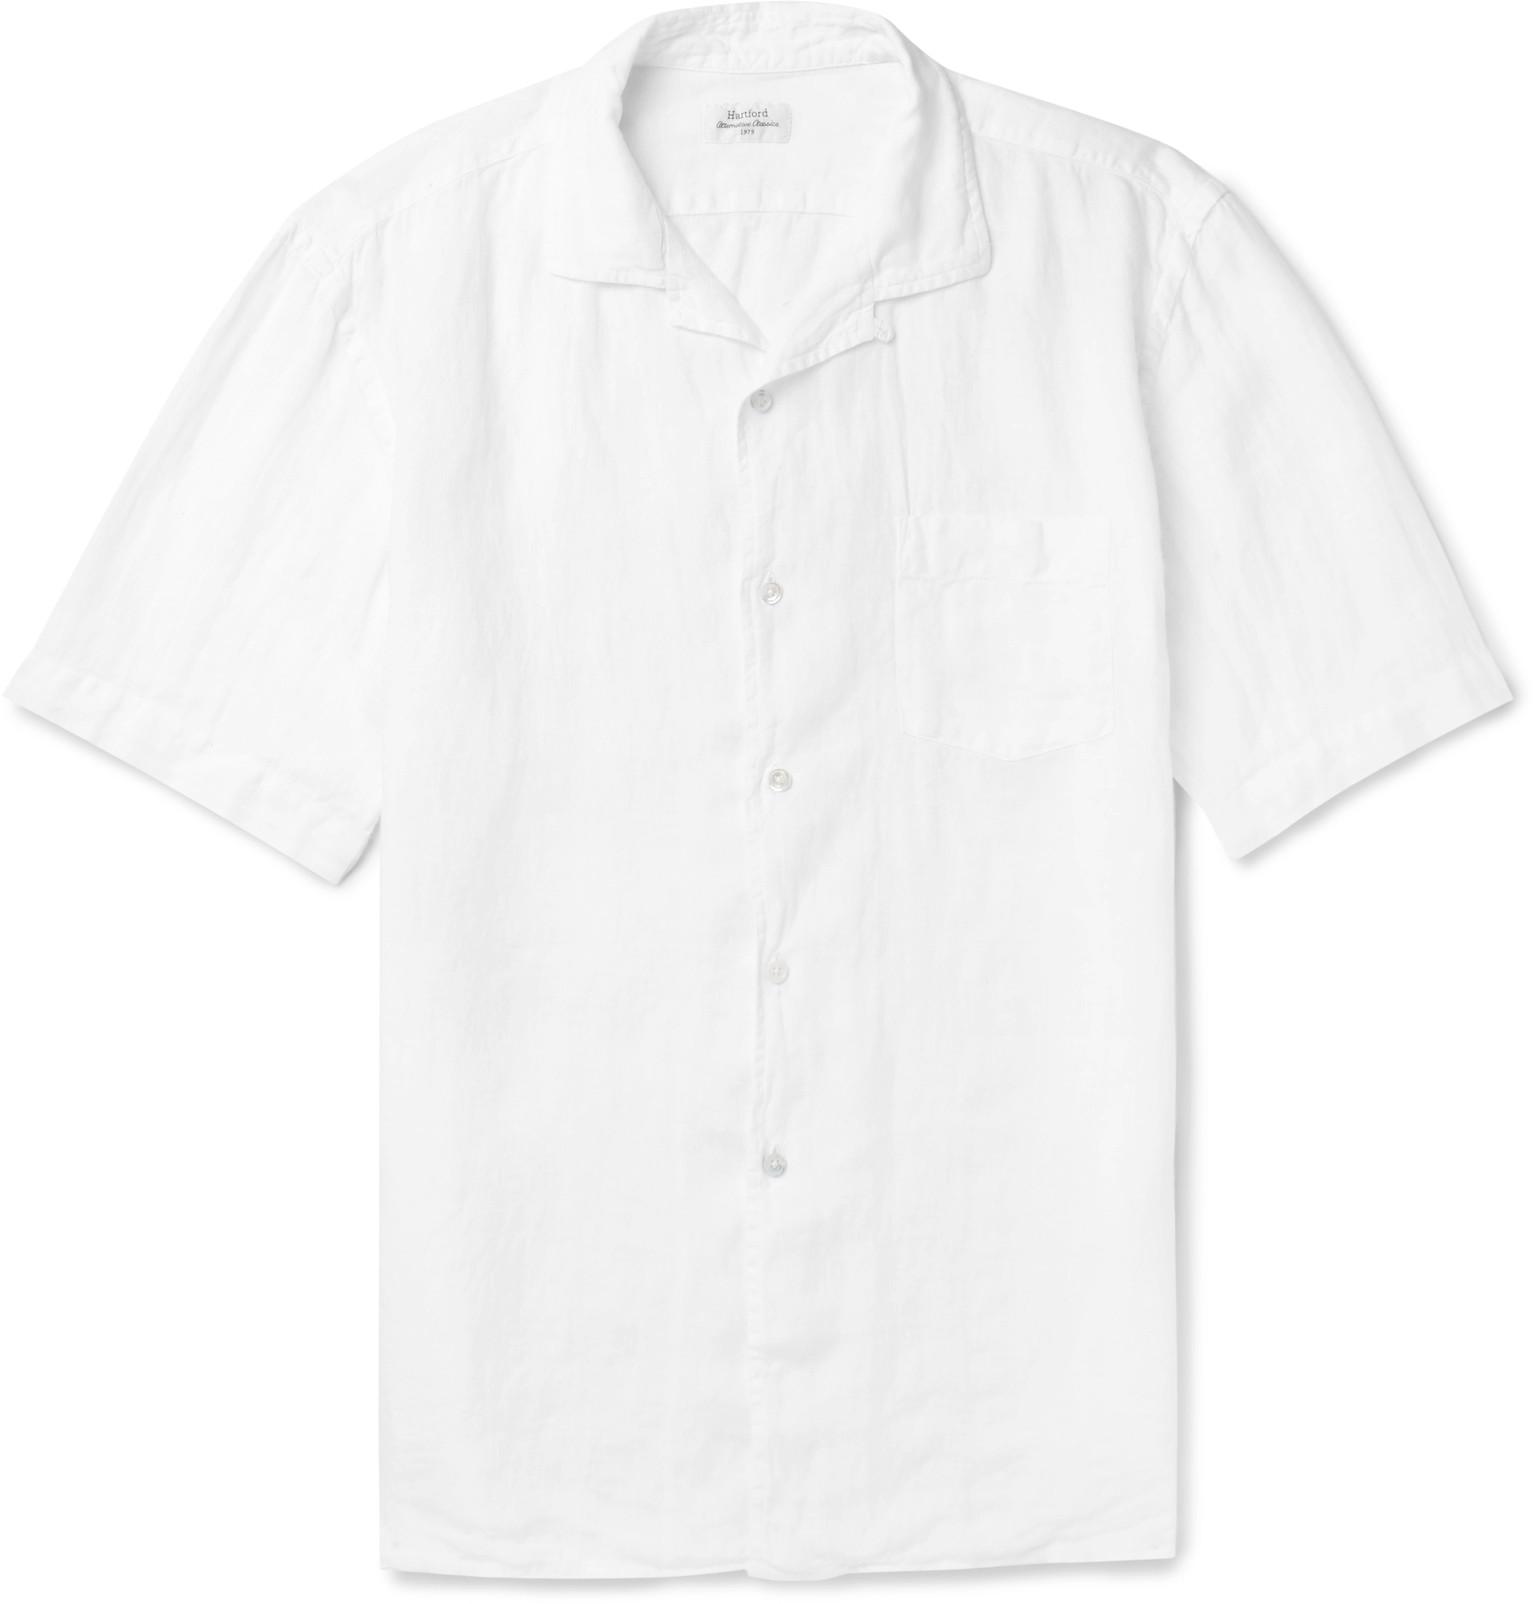 Hartford Camp-collar Linen Shirt in White for Men - Lyst